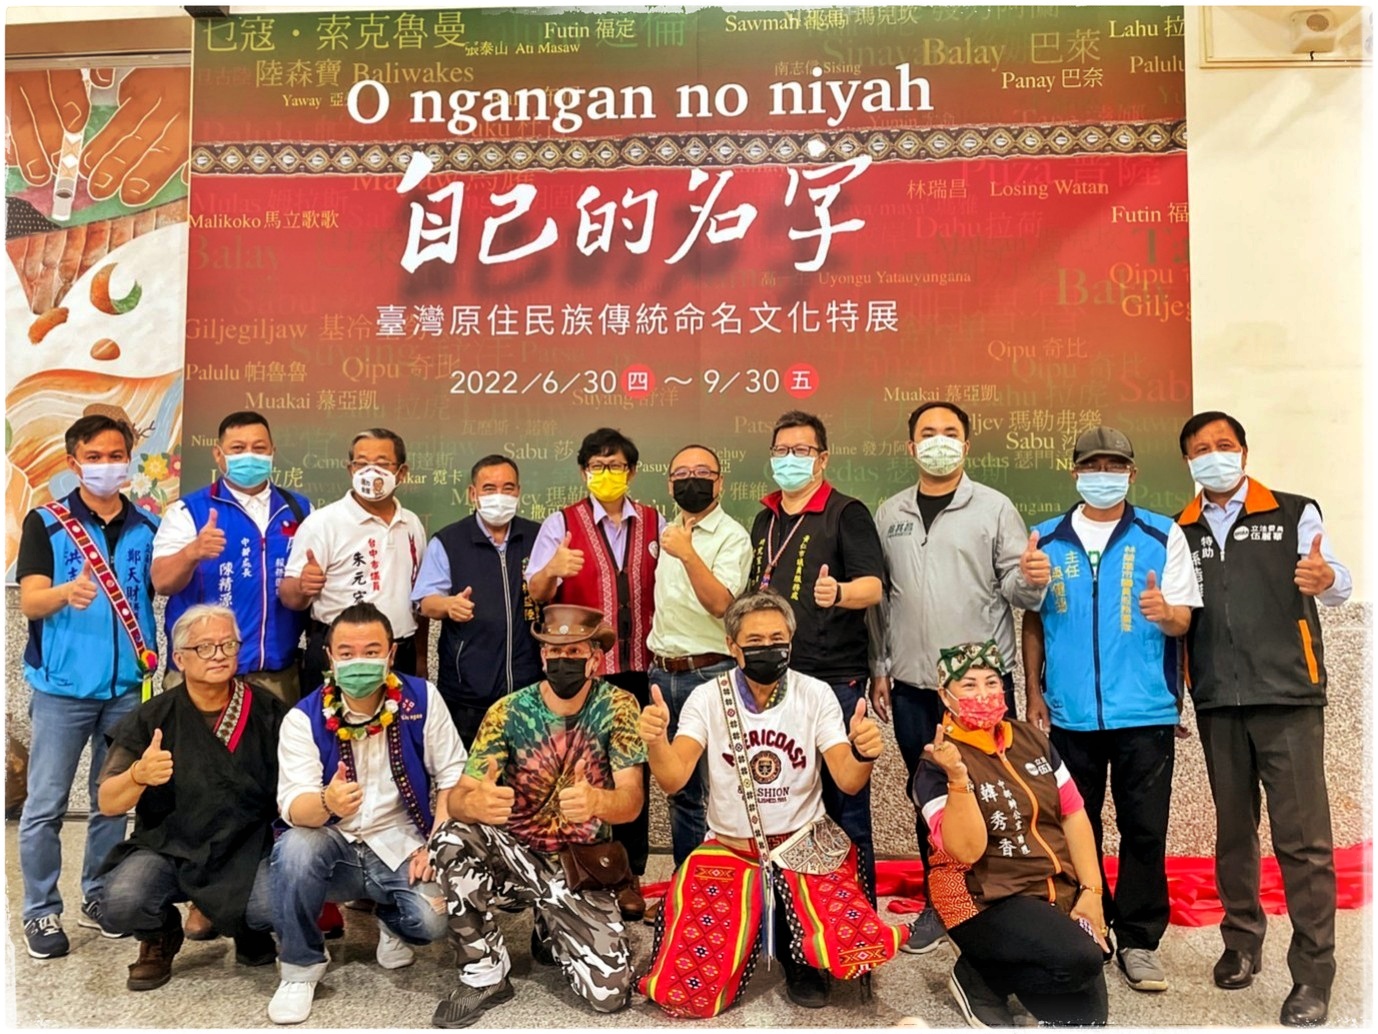 「O ngangan no niyah 自己的名字-臺灣原住民族 傳統命名文化特展」臺中市巡迴展